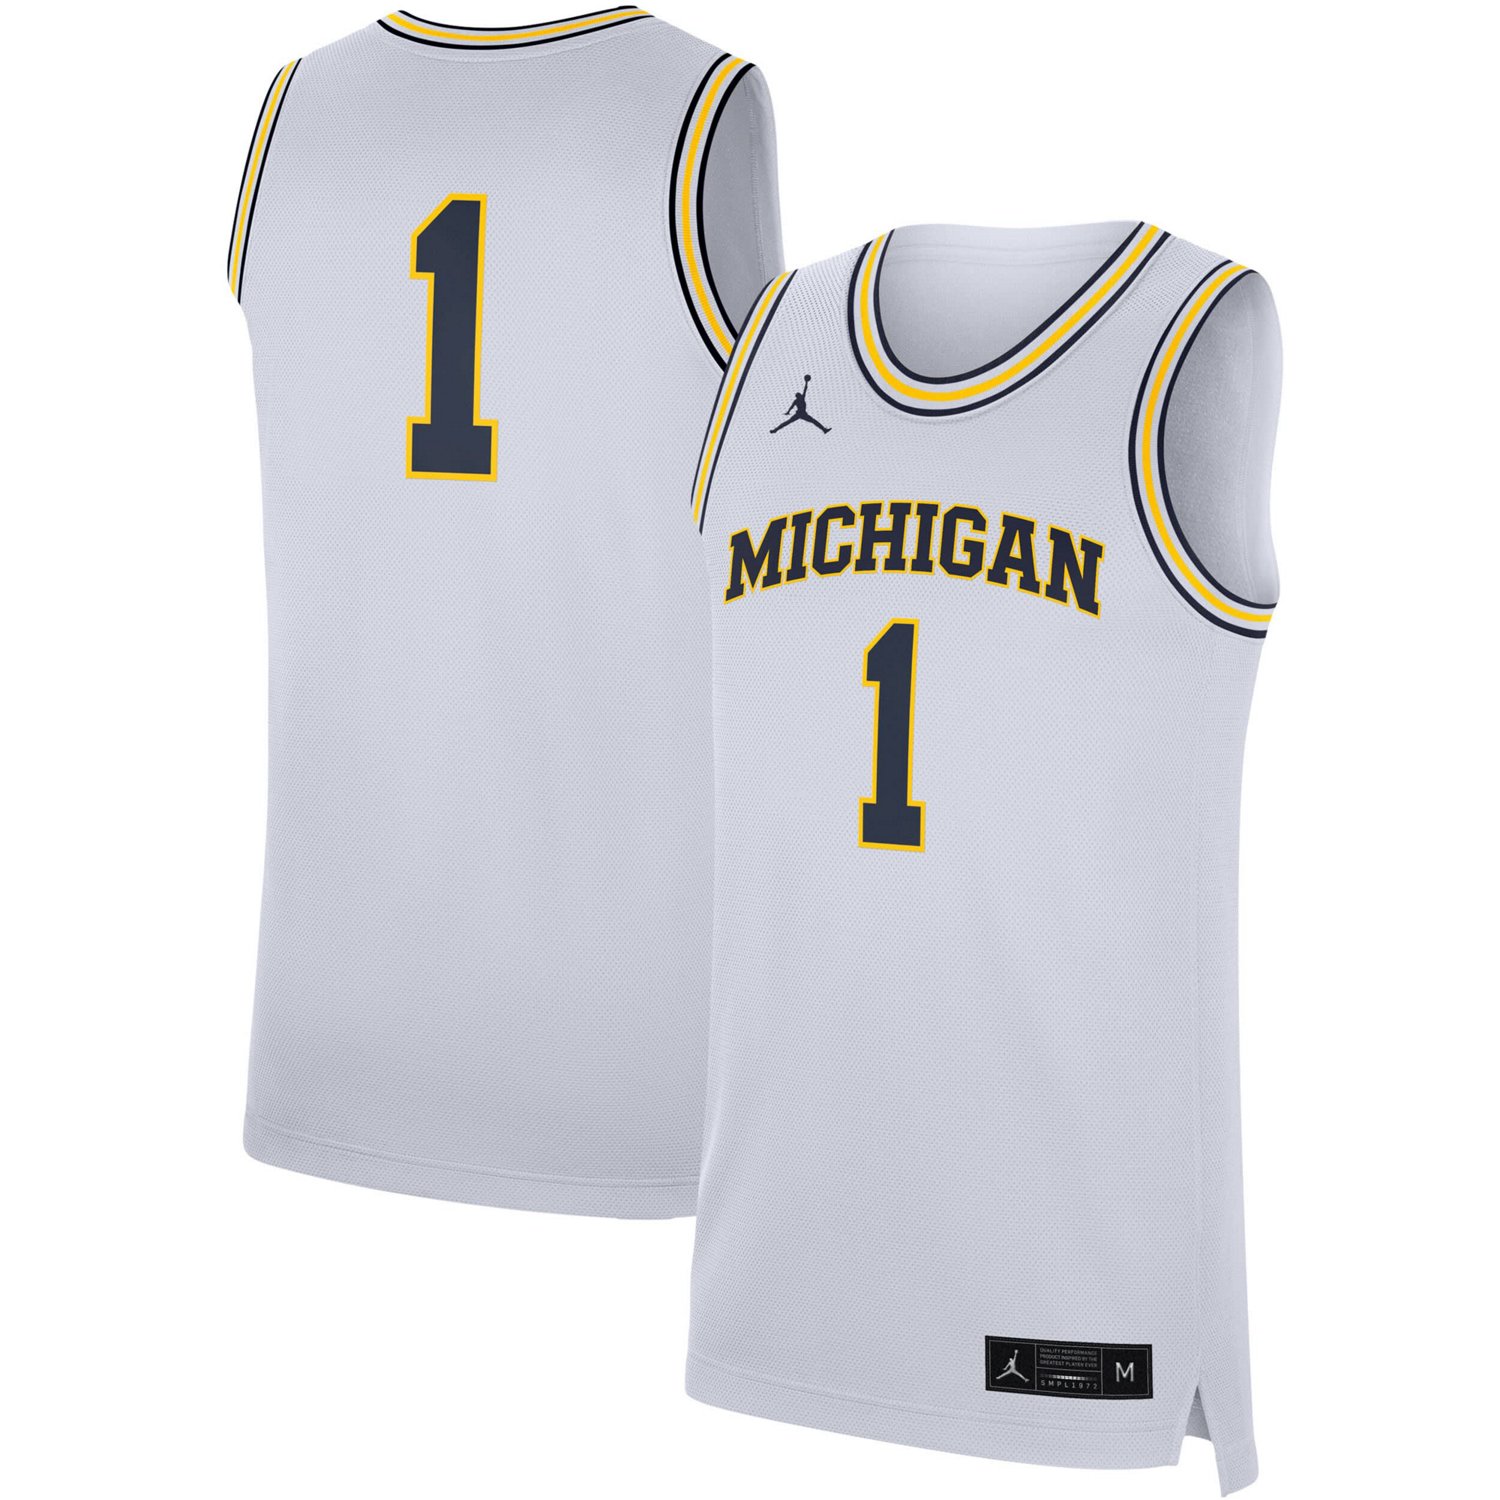 Jordan Brand Michigan Wolverines Replica Jersey                                                                                  - view number 1 selected